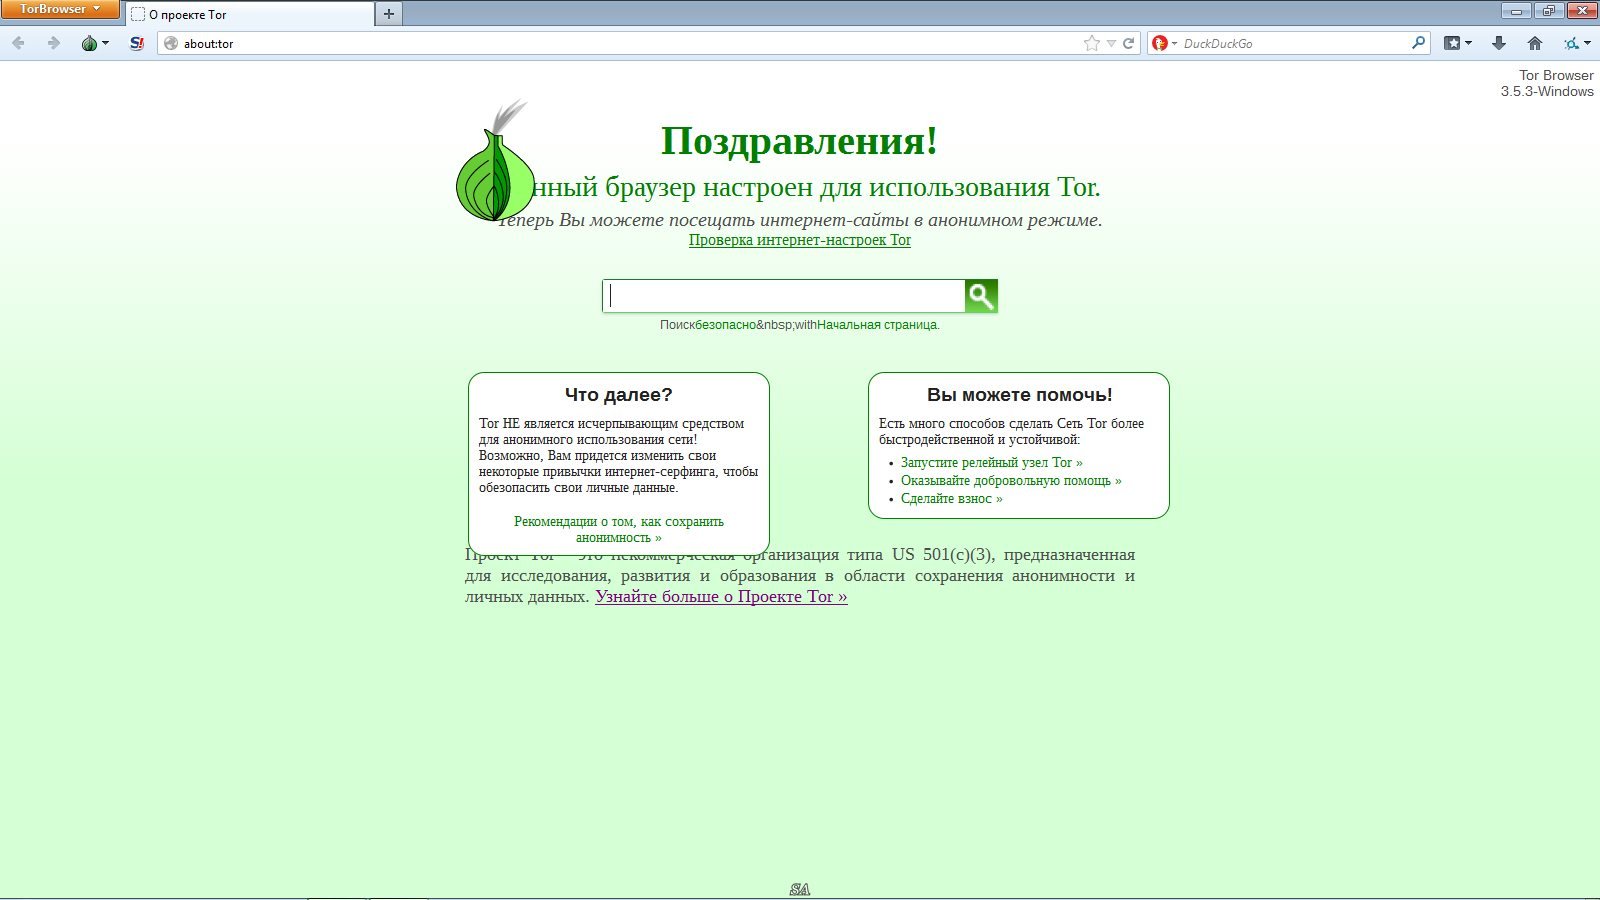 Скачать тор браузер на русском бесплатно через торрент мега как сменить язык в браузере тор мега